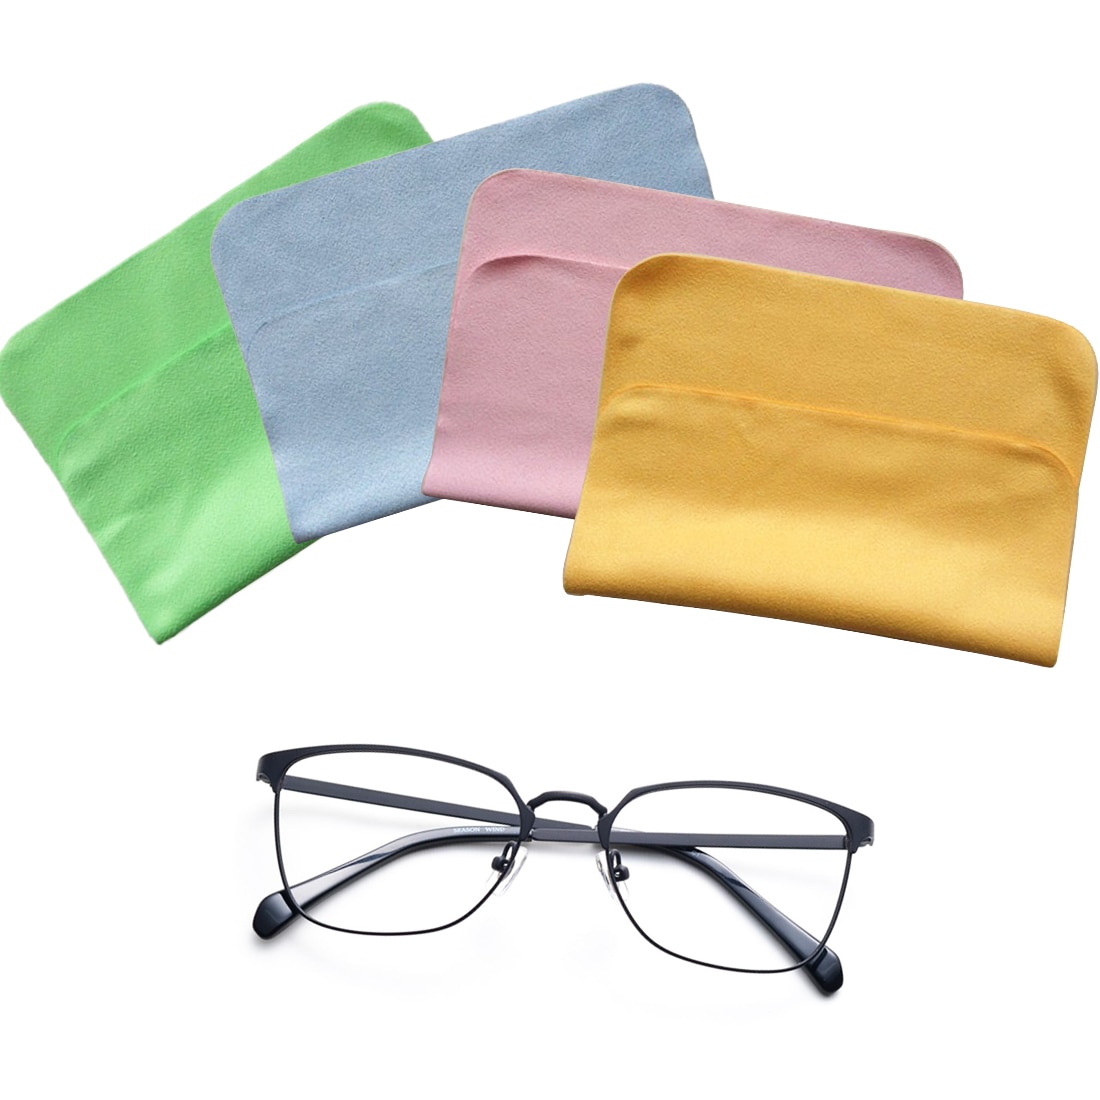 Superfine fiber mikrofiber briller linse renere klud briller telefon skærm rengøringsværktøjer 1 pc